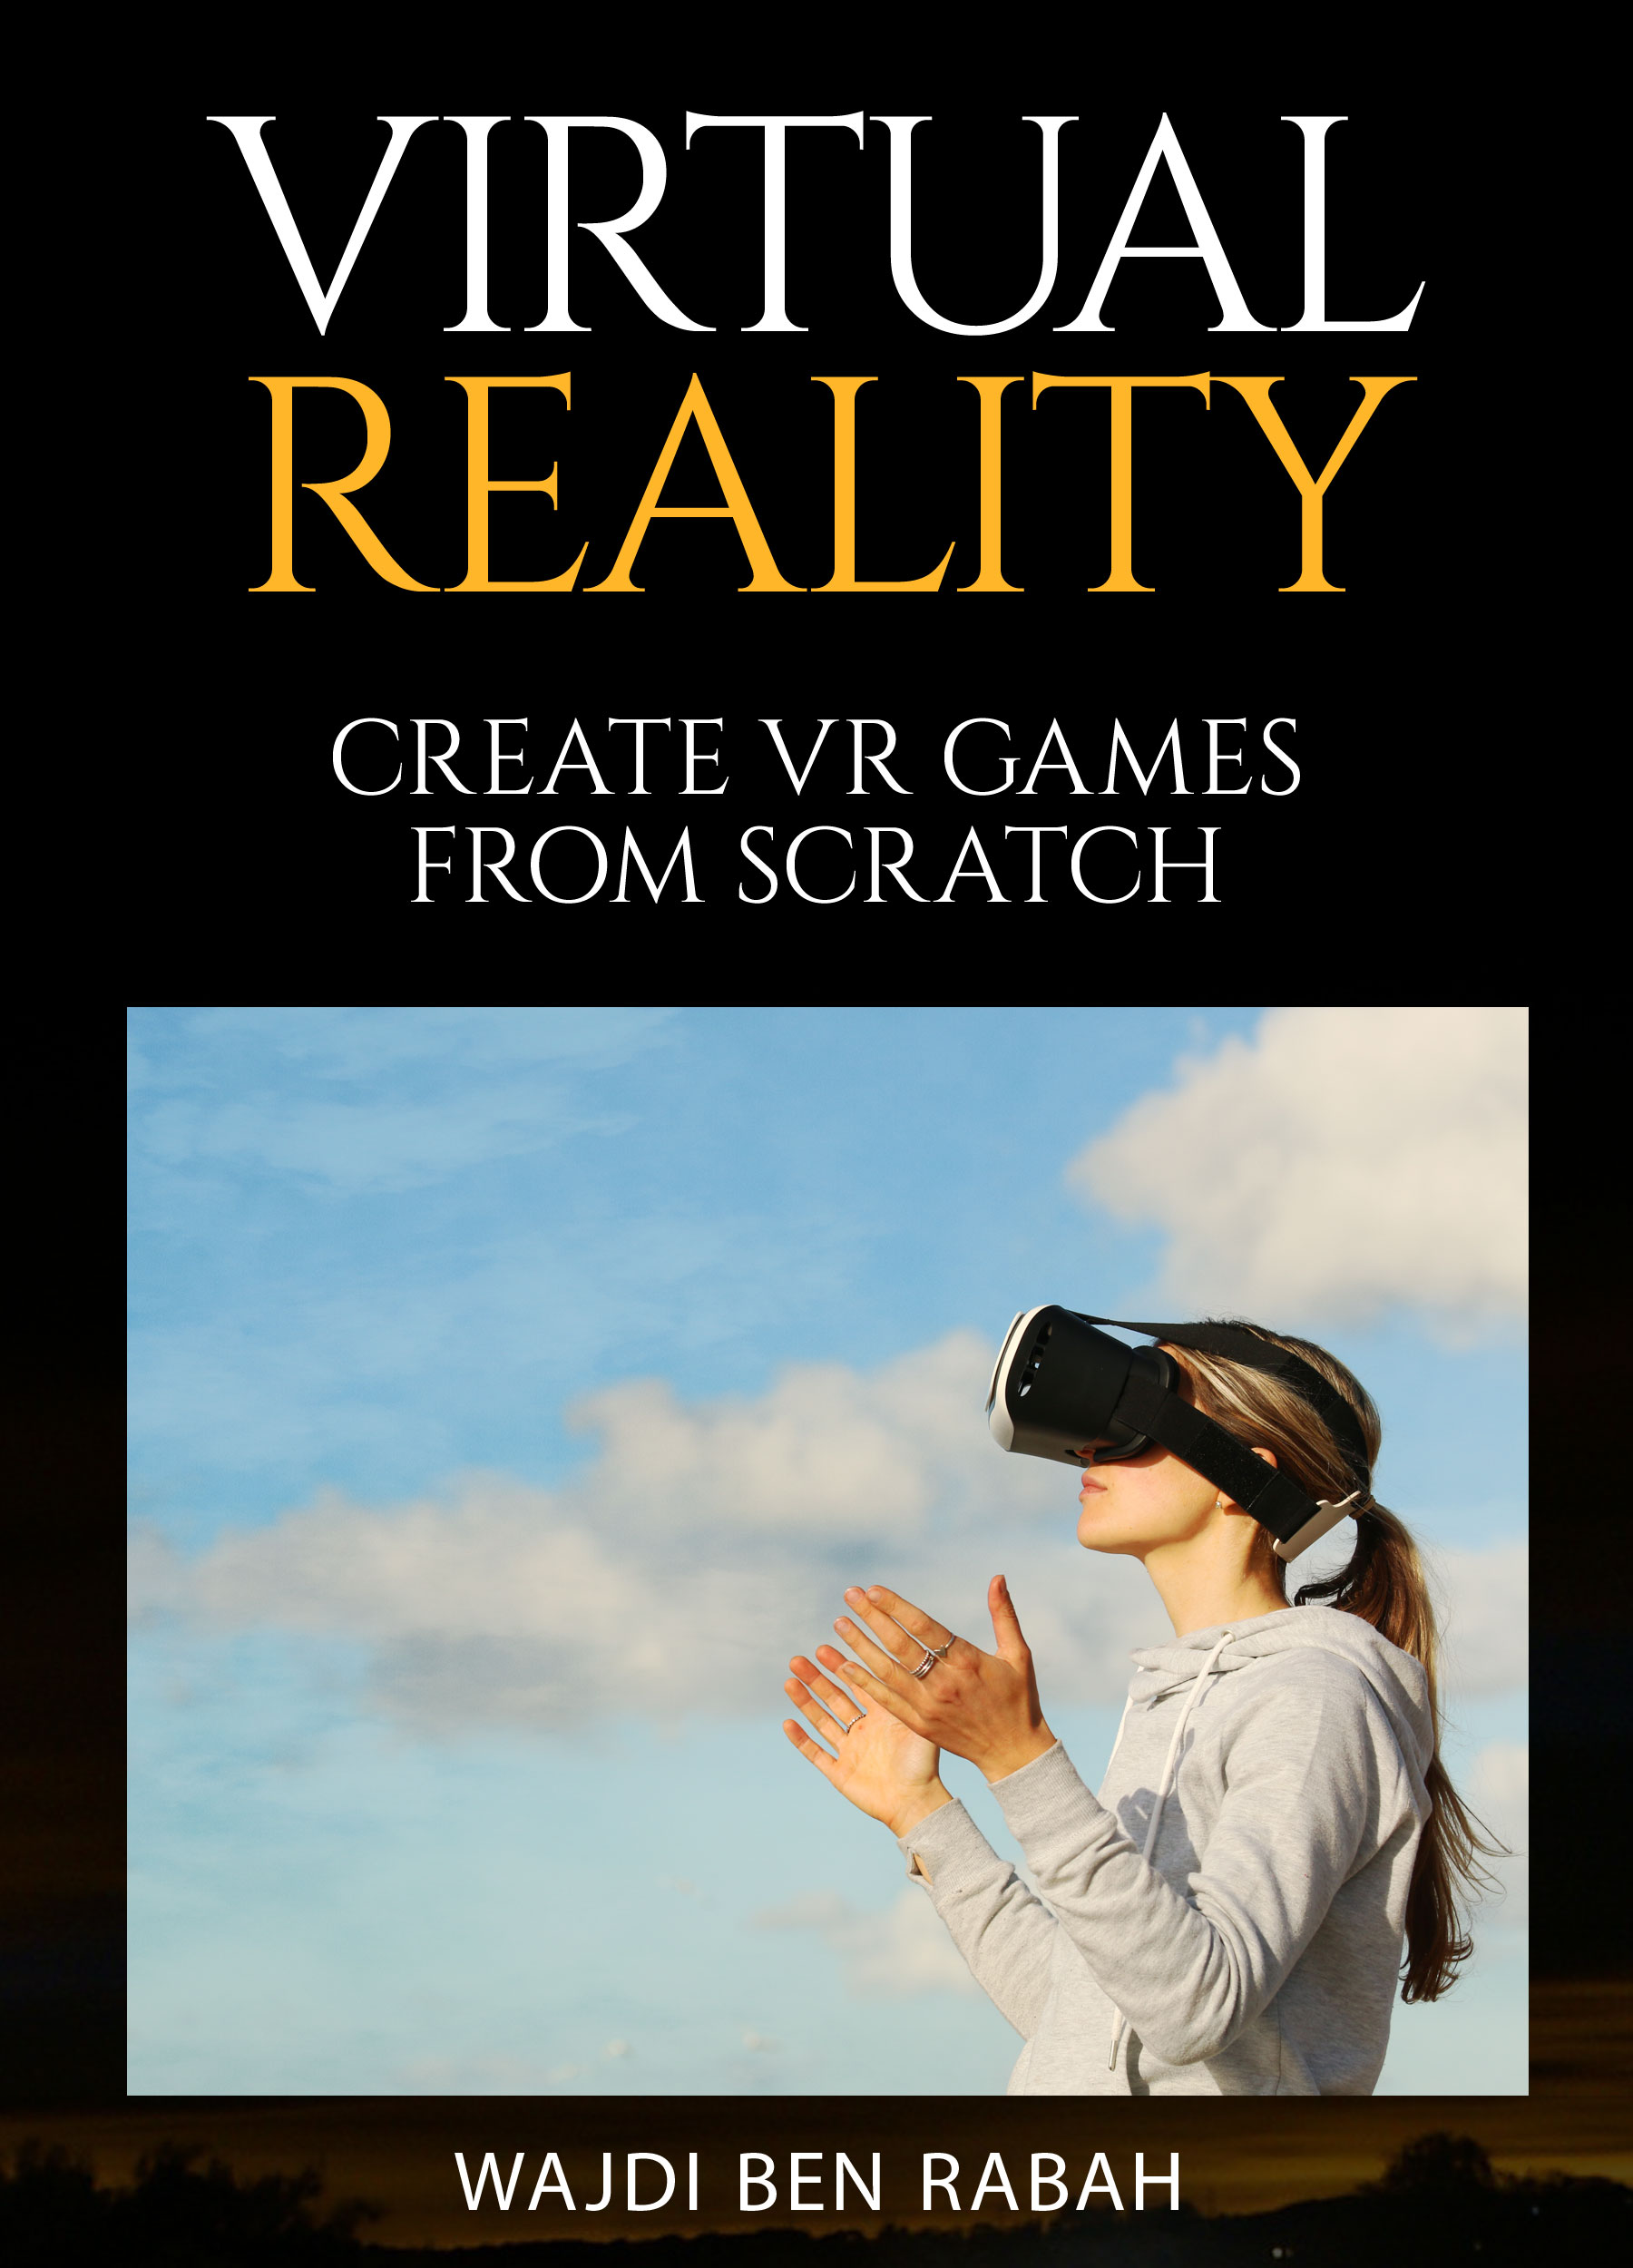 Virtual Reality book by Wajdi Ben Rabah